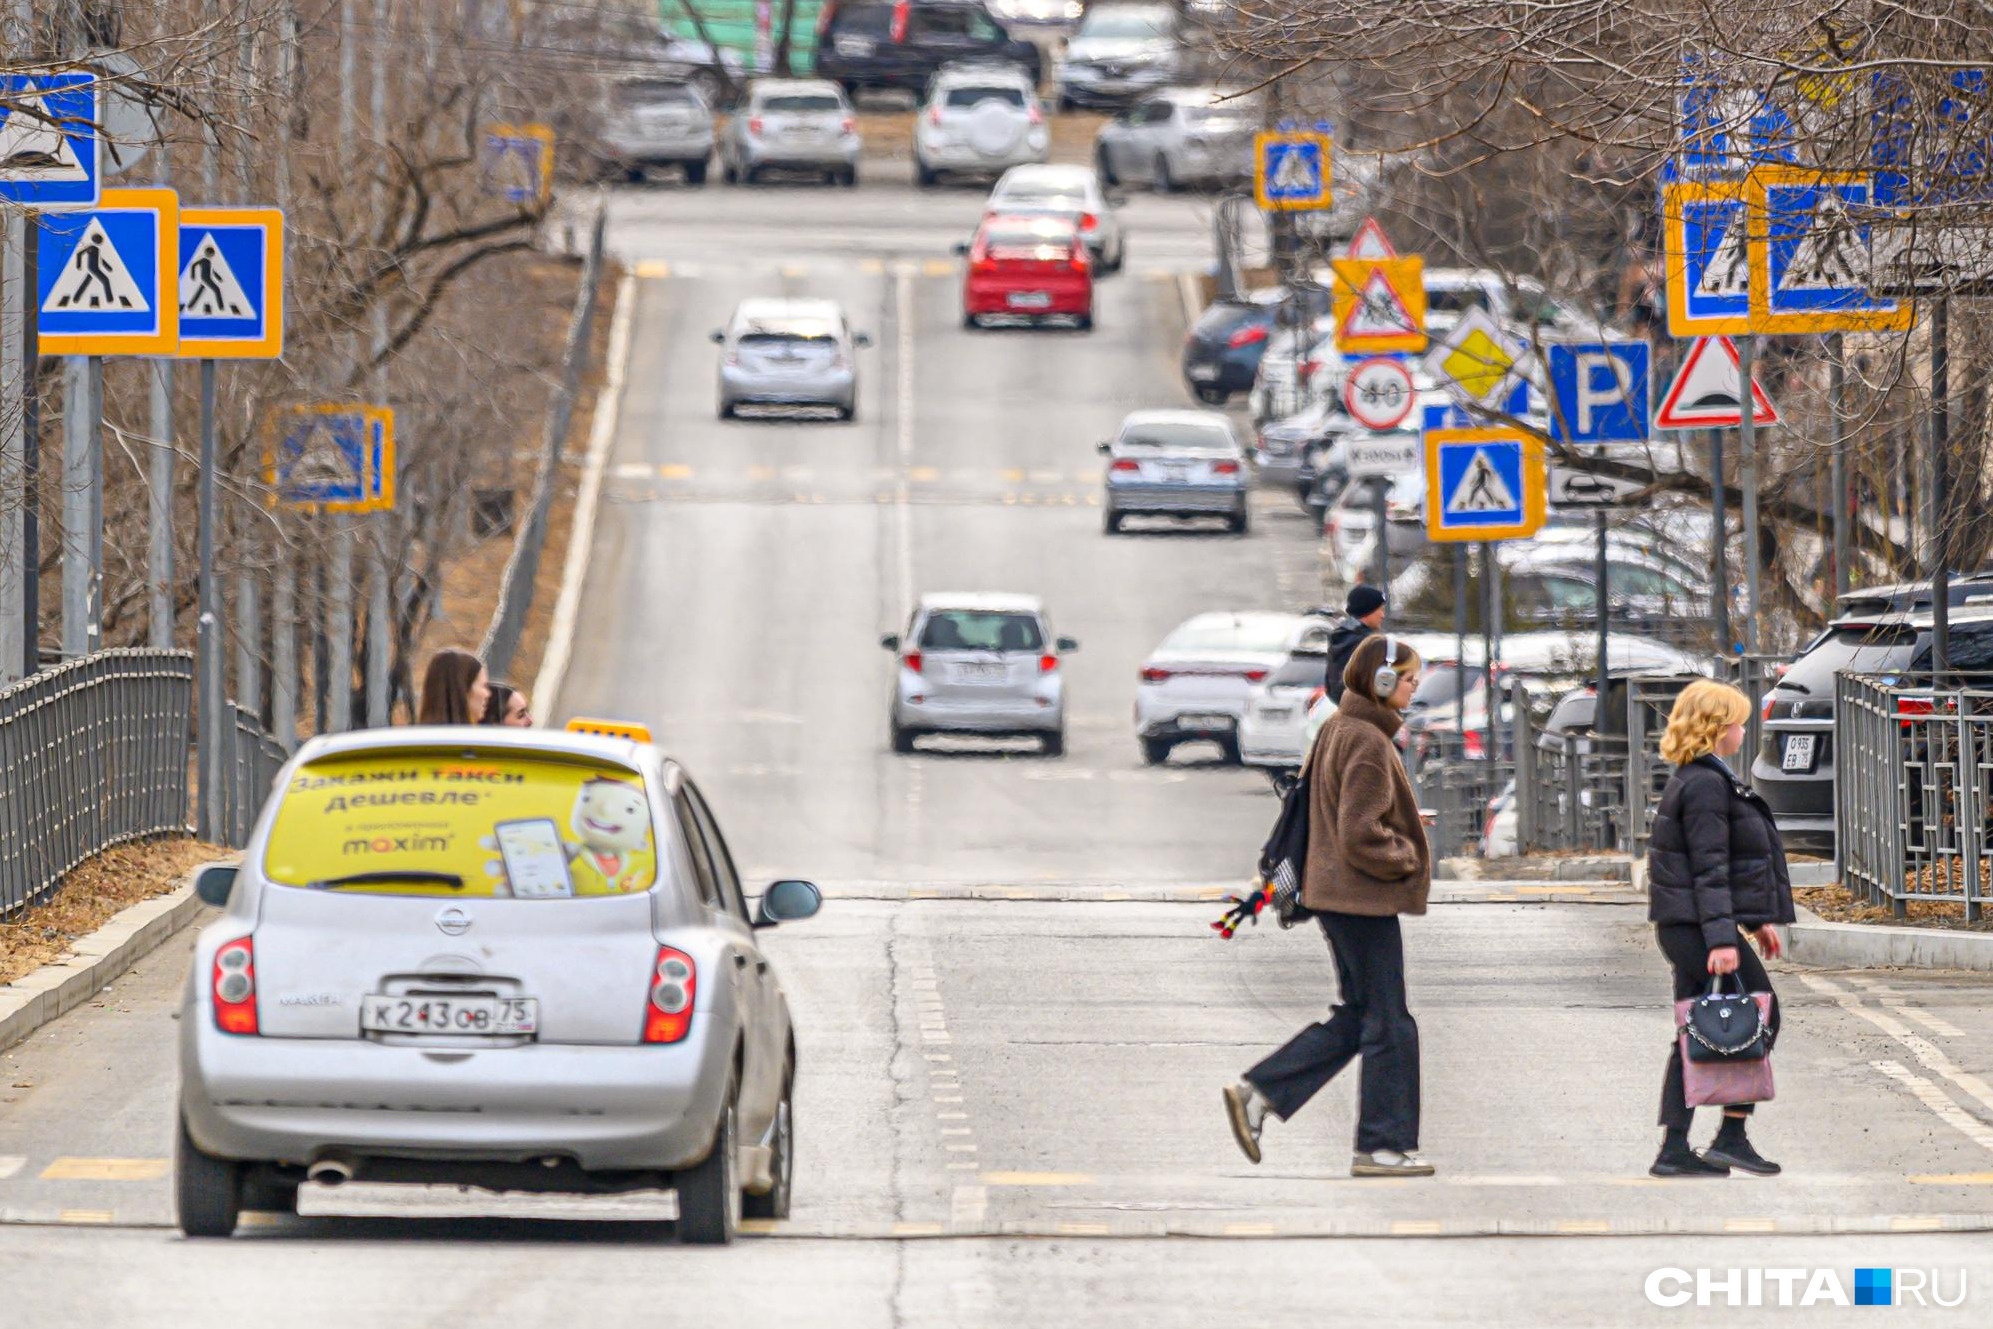 Власти Читы выделили 100 тыс. руб. на воспитание законопослушных пешеходов и автомобилистов